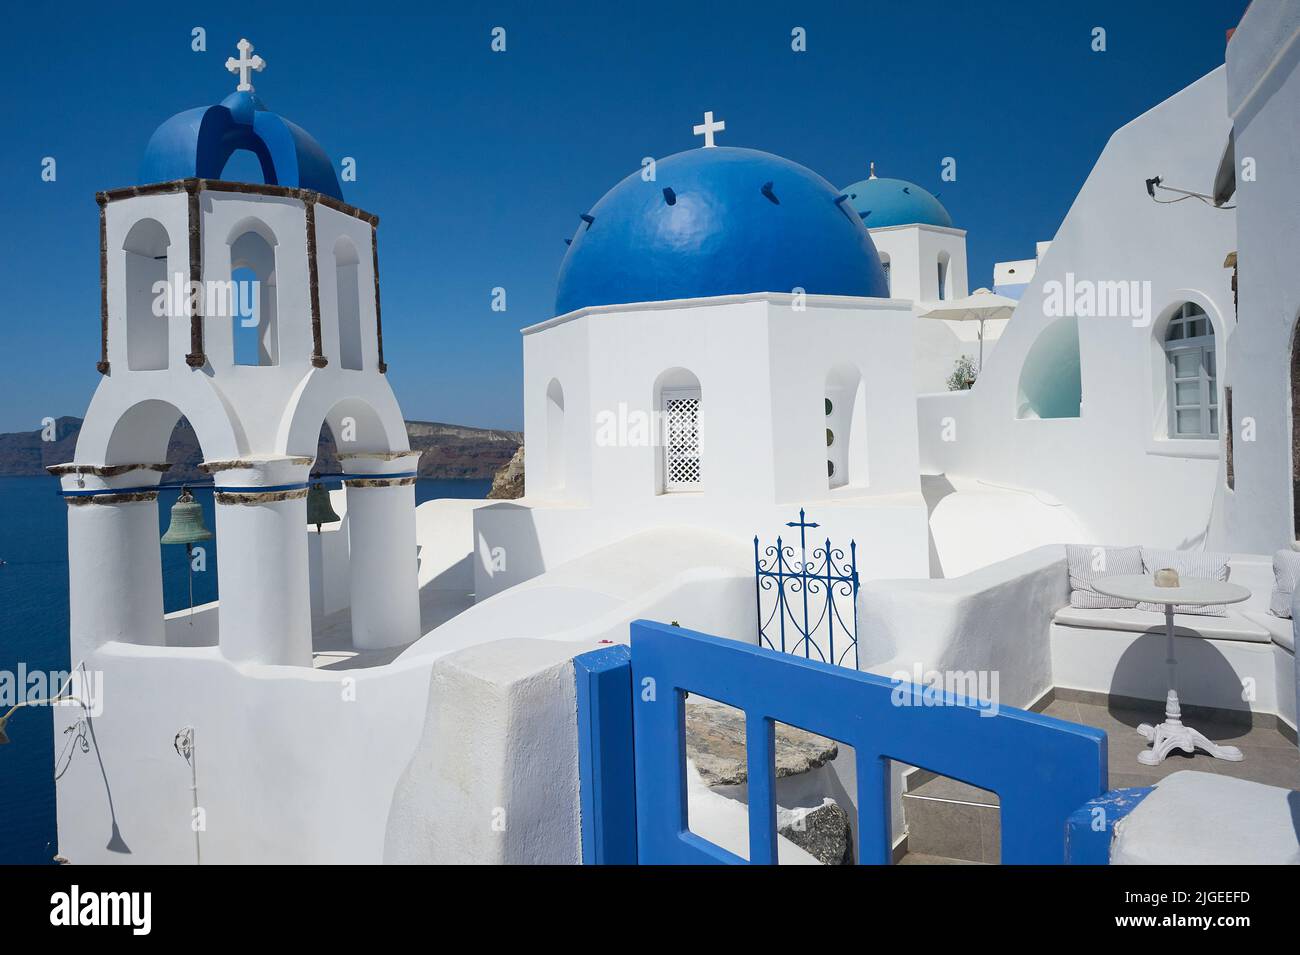 Tradizionali chiese greco-ortodosse a cupola blu a Oia, o Ia sull'isola di Santorini, parte delle isole Cicladi al largo della Grecia continentale Foto Stock